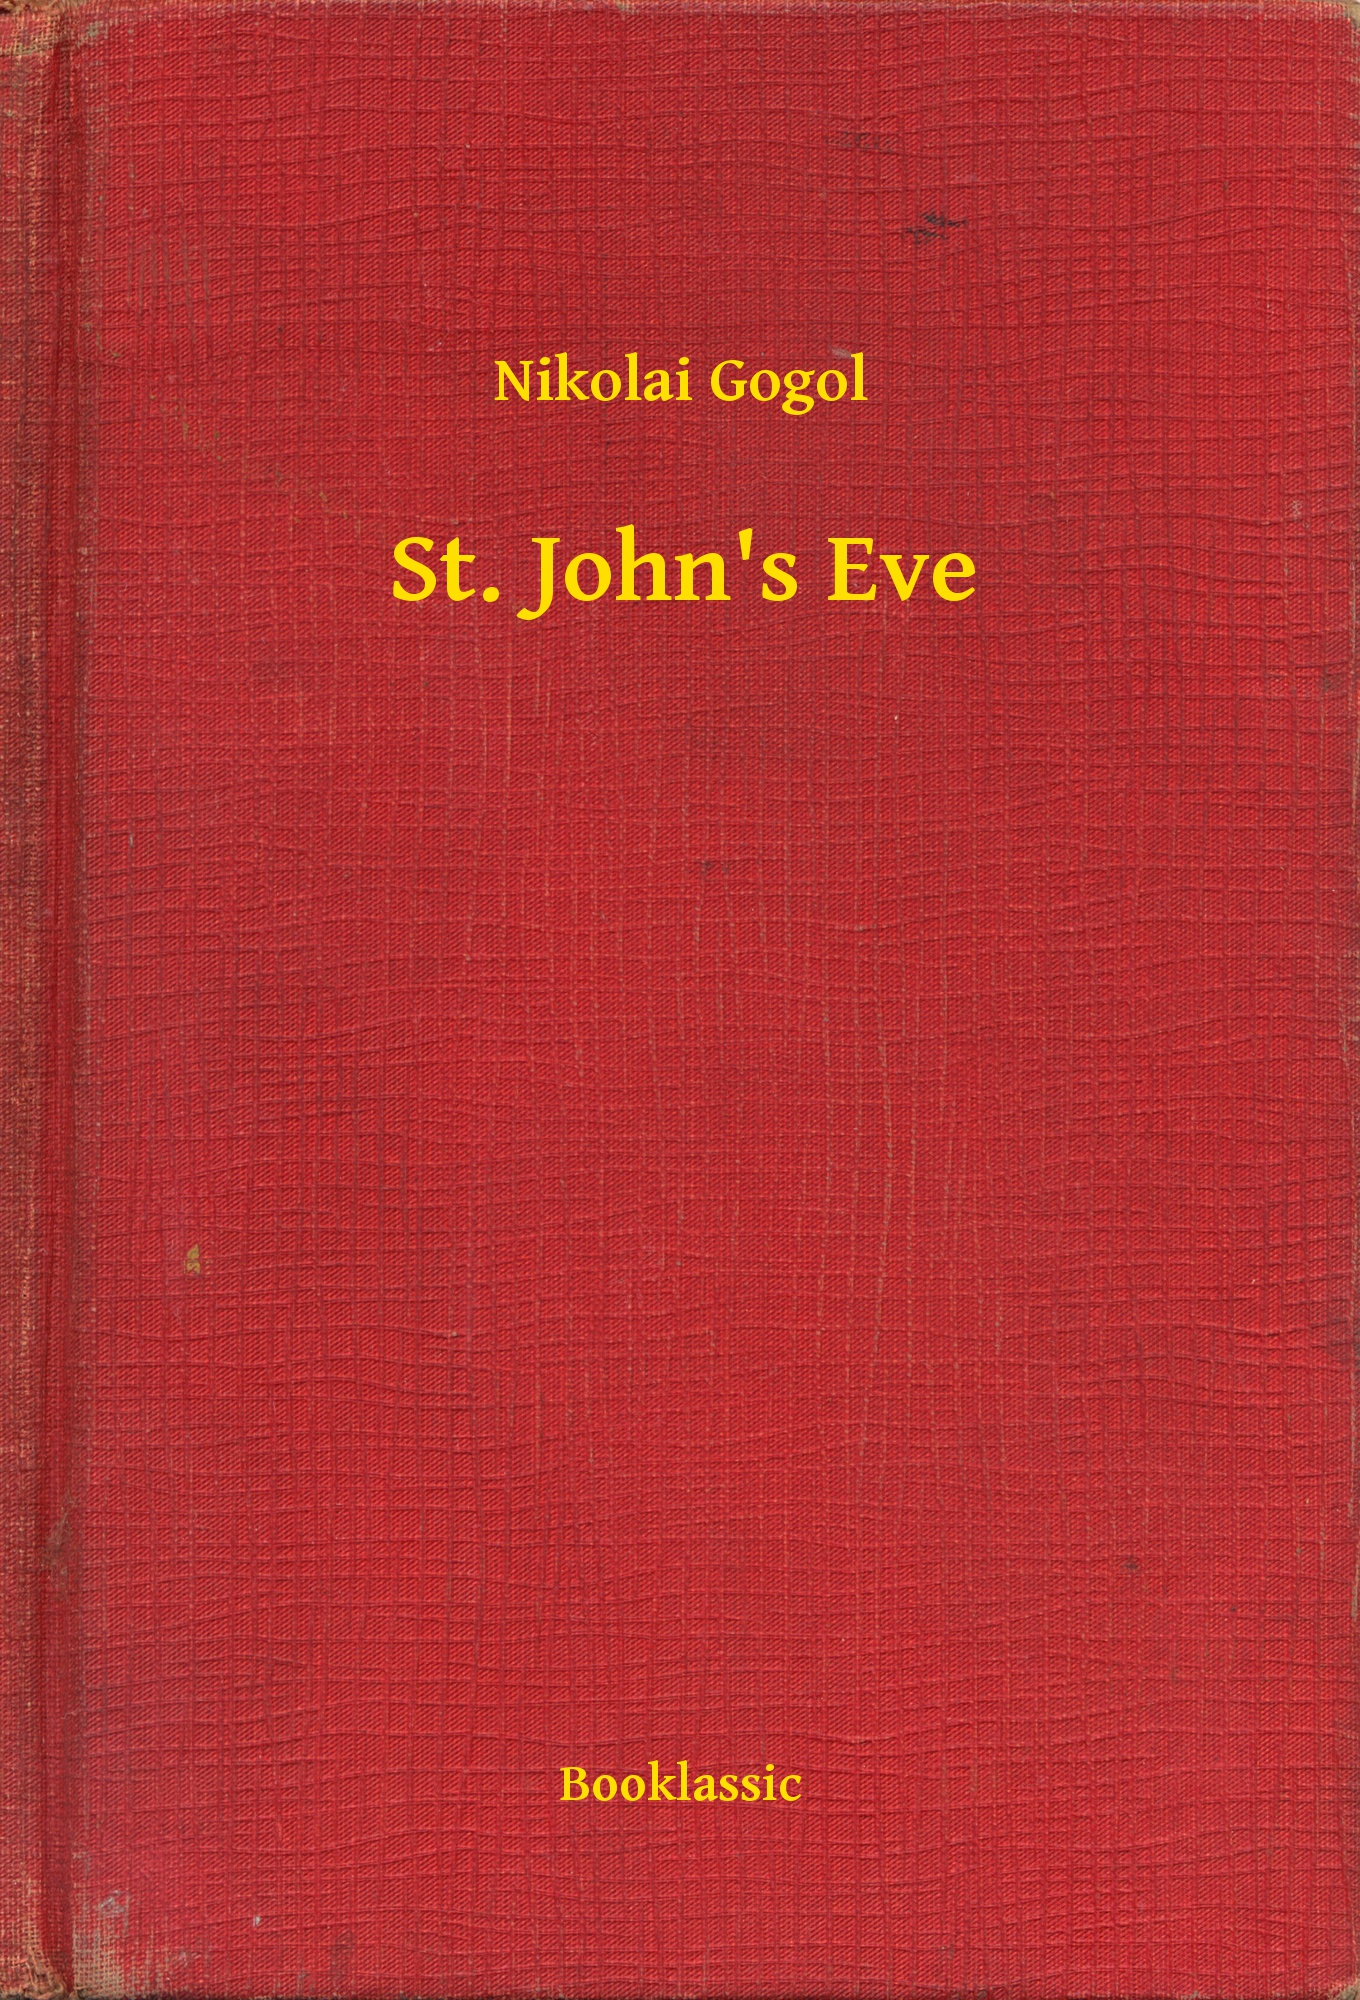 St. John"s Eve